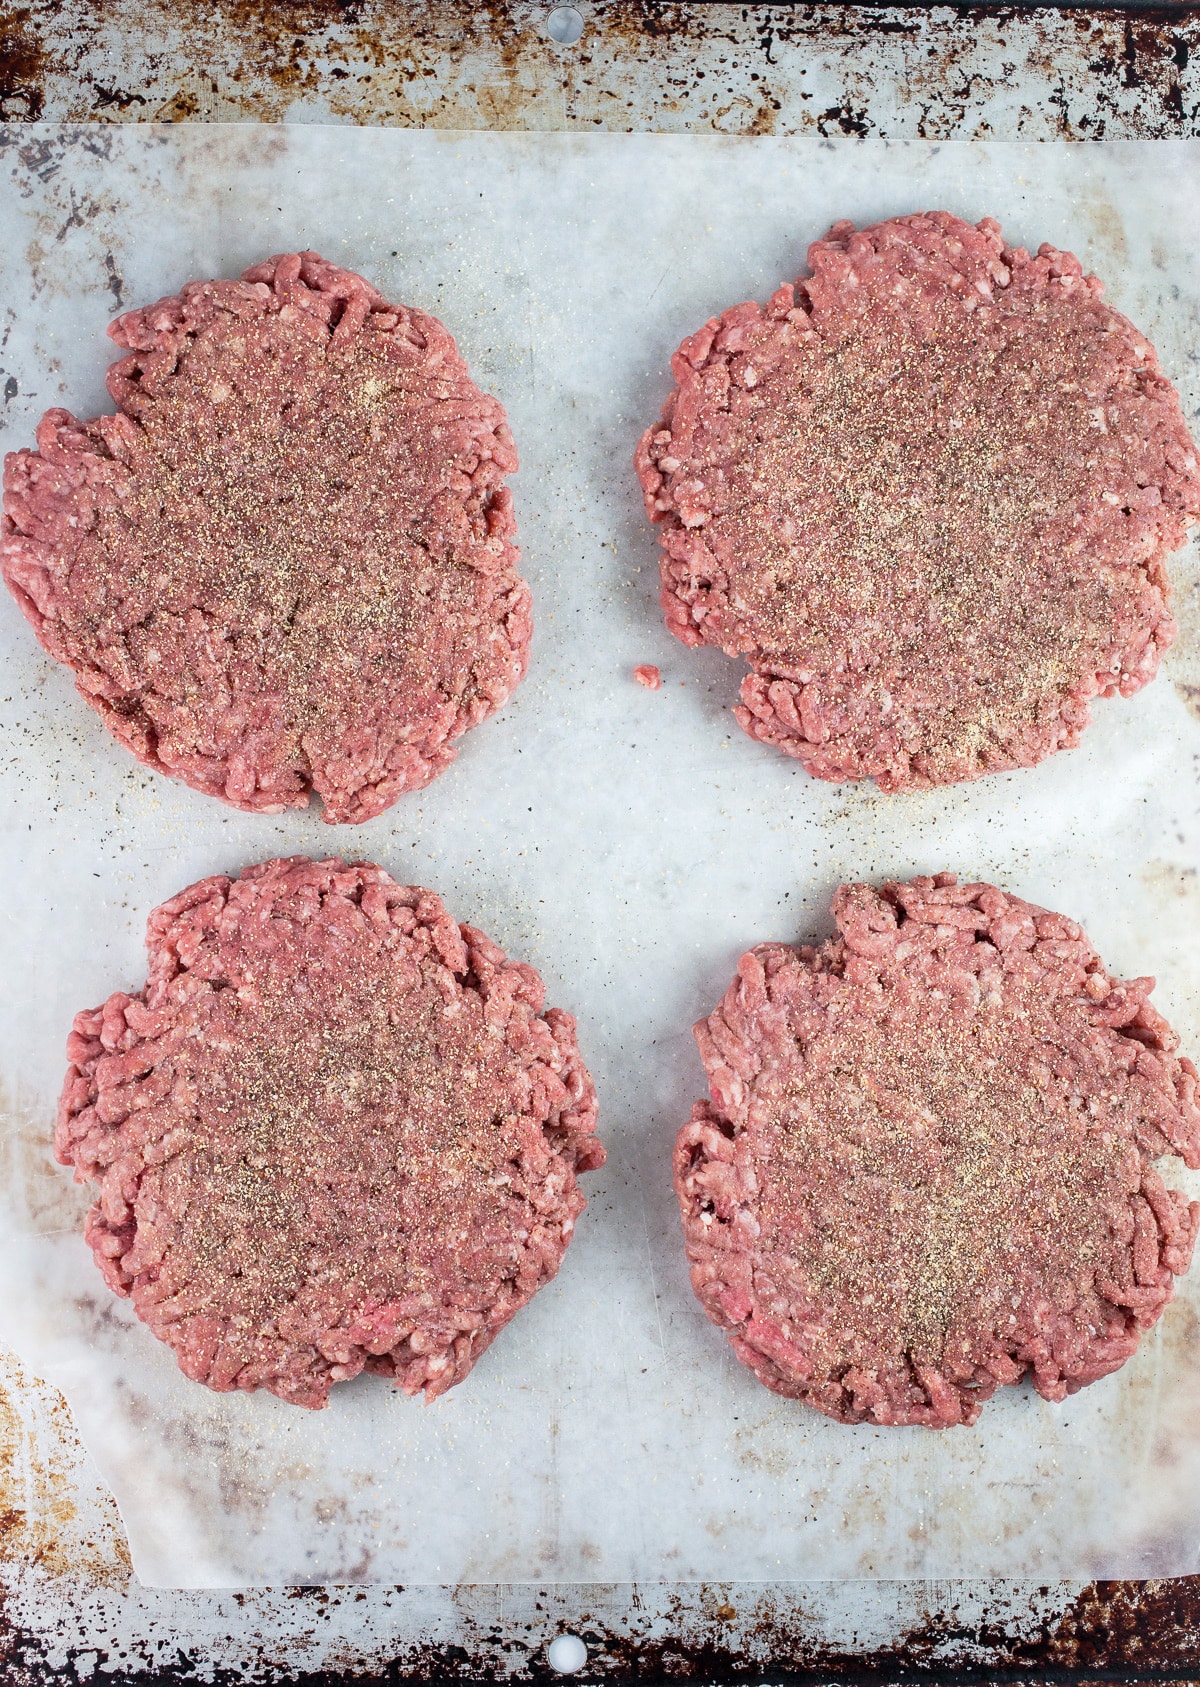 Seasoned raw ground beef patties on metal pan.